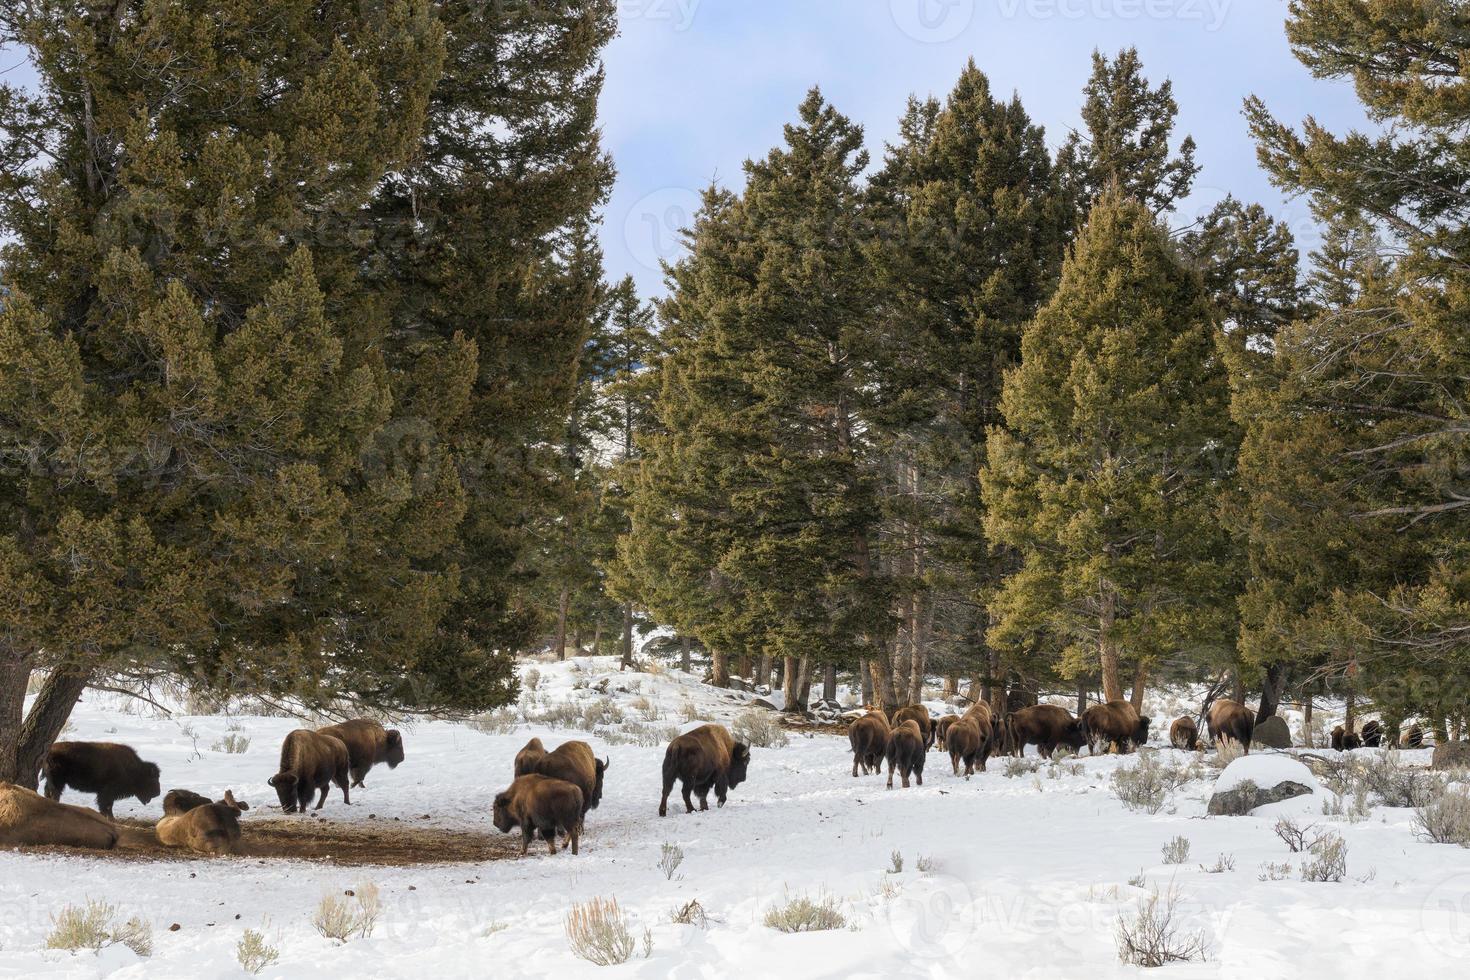 kudde Amerikaanse bizons, Yellowstone National Park. winters tafereel. foto